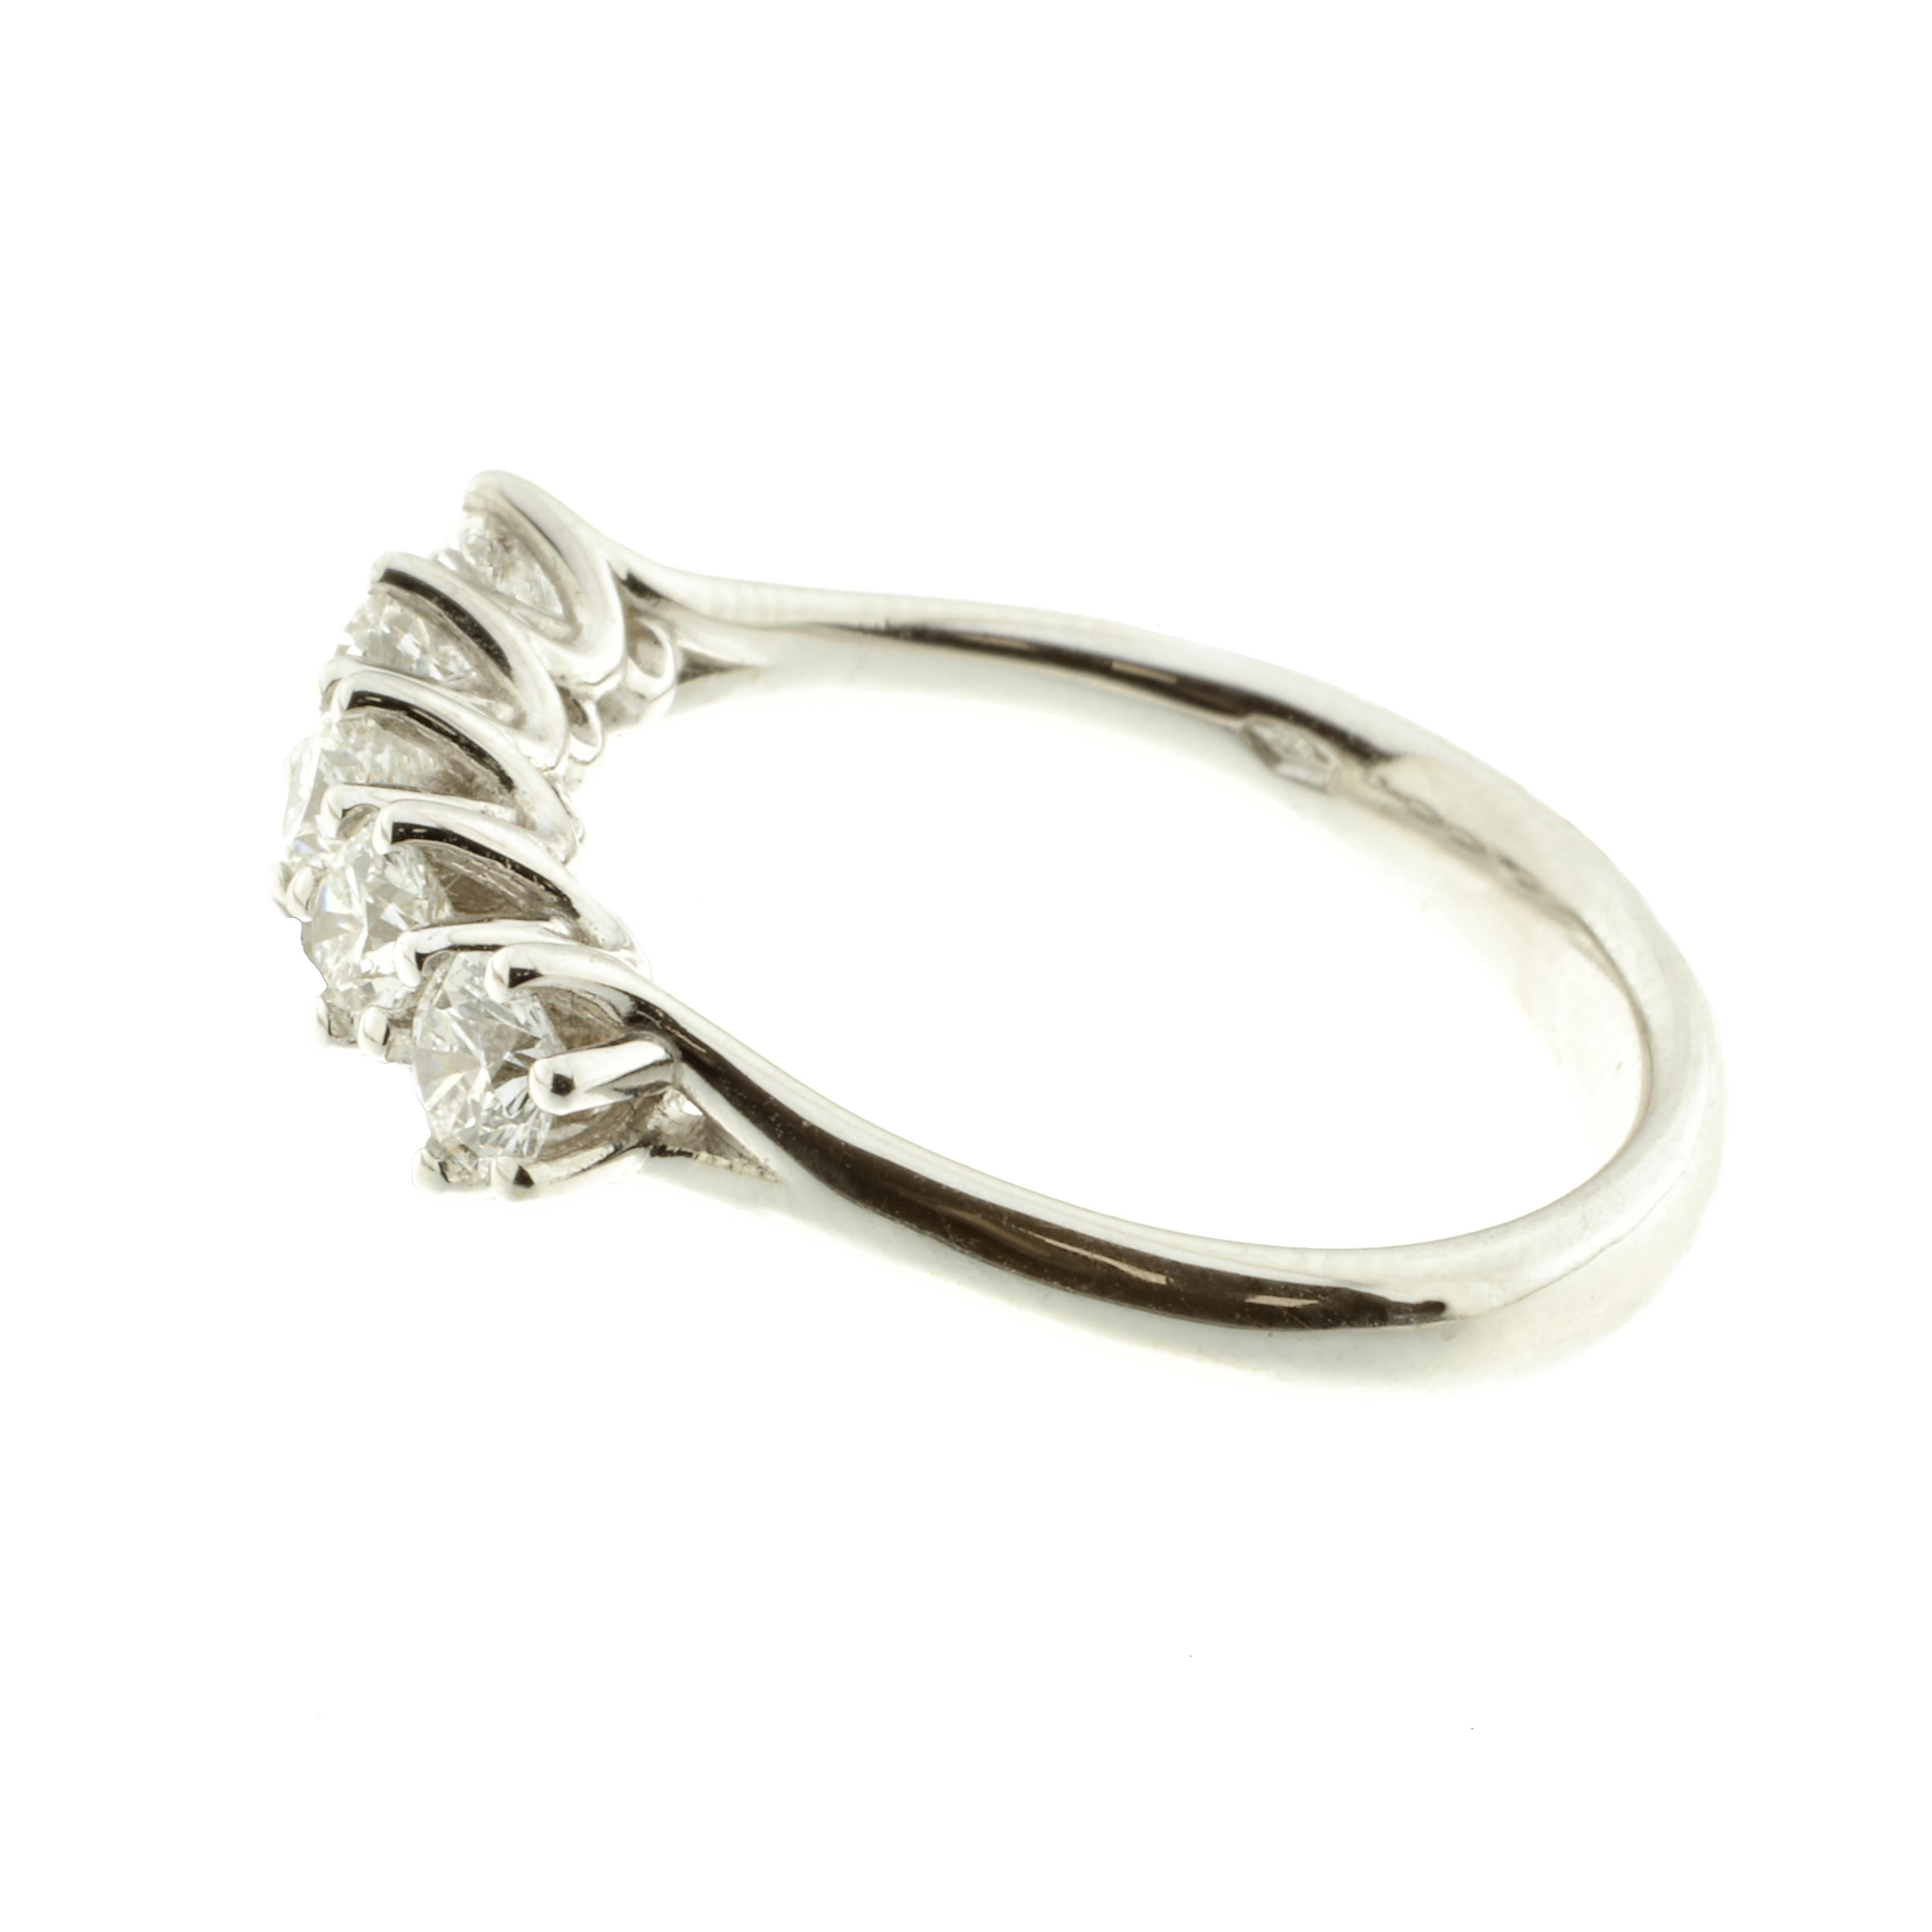 Ein wunderschöner, von Hand gefertigter Ring mit fünf ausgesuchten runden weißen Diamanten. Der Ring ist aus 18 Karat Weißgold. 

Der fotografierte Ring hat die Ringgröße 15 EU / 7,25 US, kann aber auf Anfrage in jeder Größe angefertigt werden.